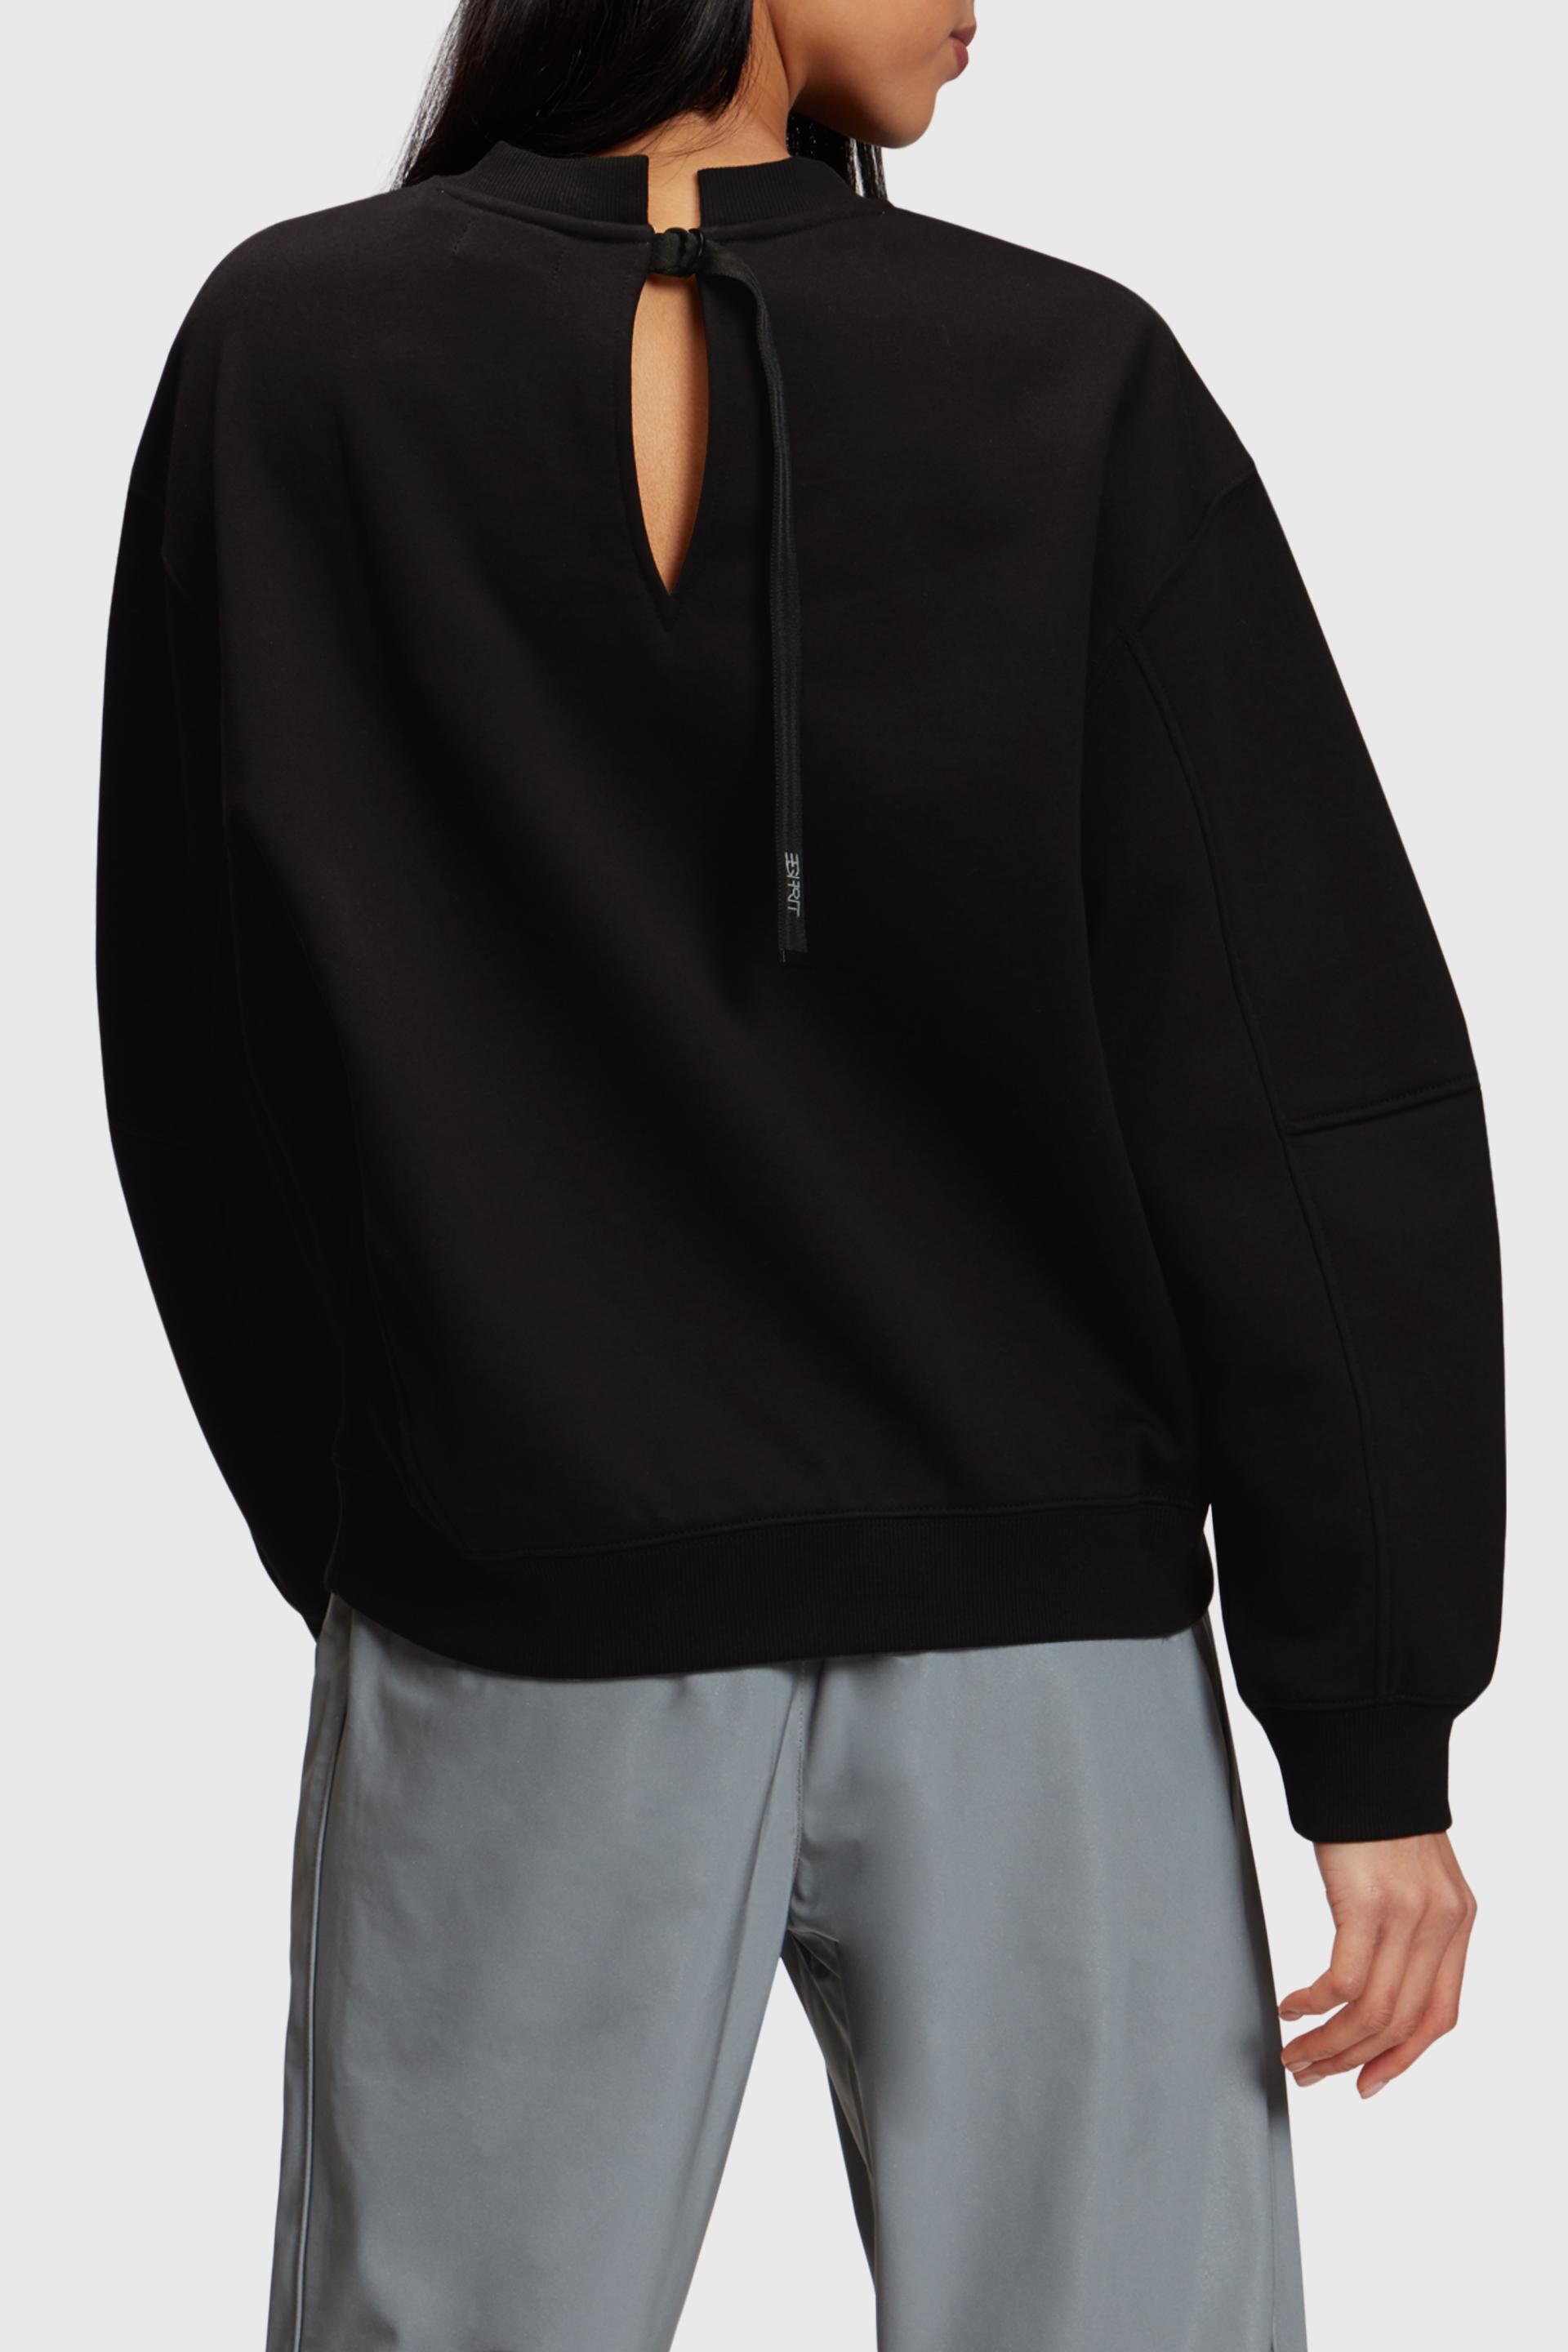 Esprit Damen Übergroßes Sweatshirt mit Logo-Print